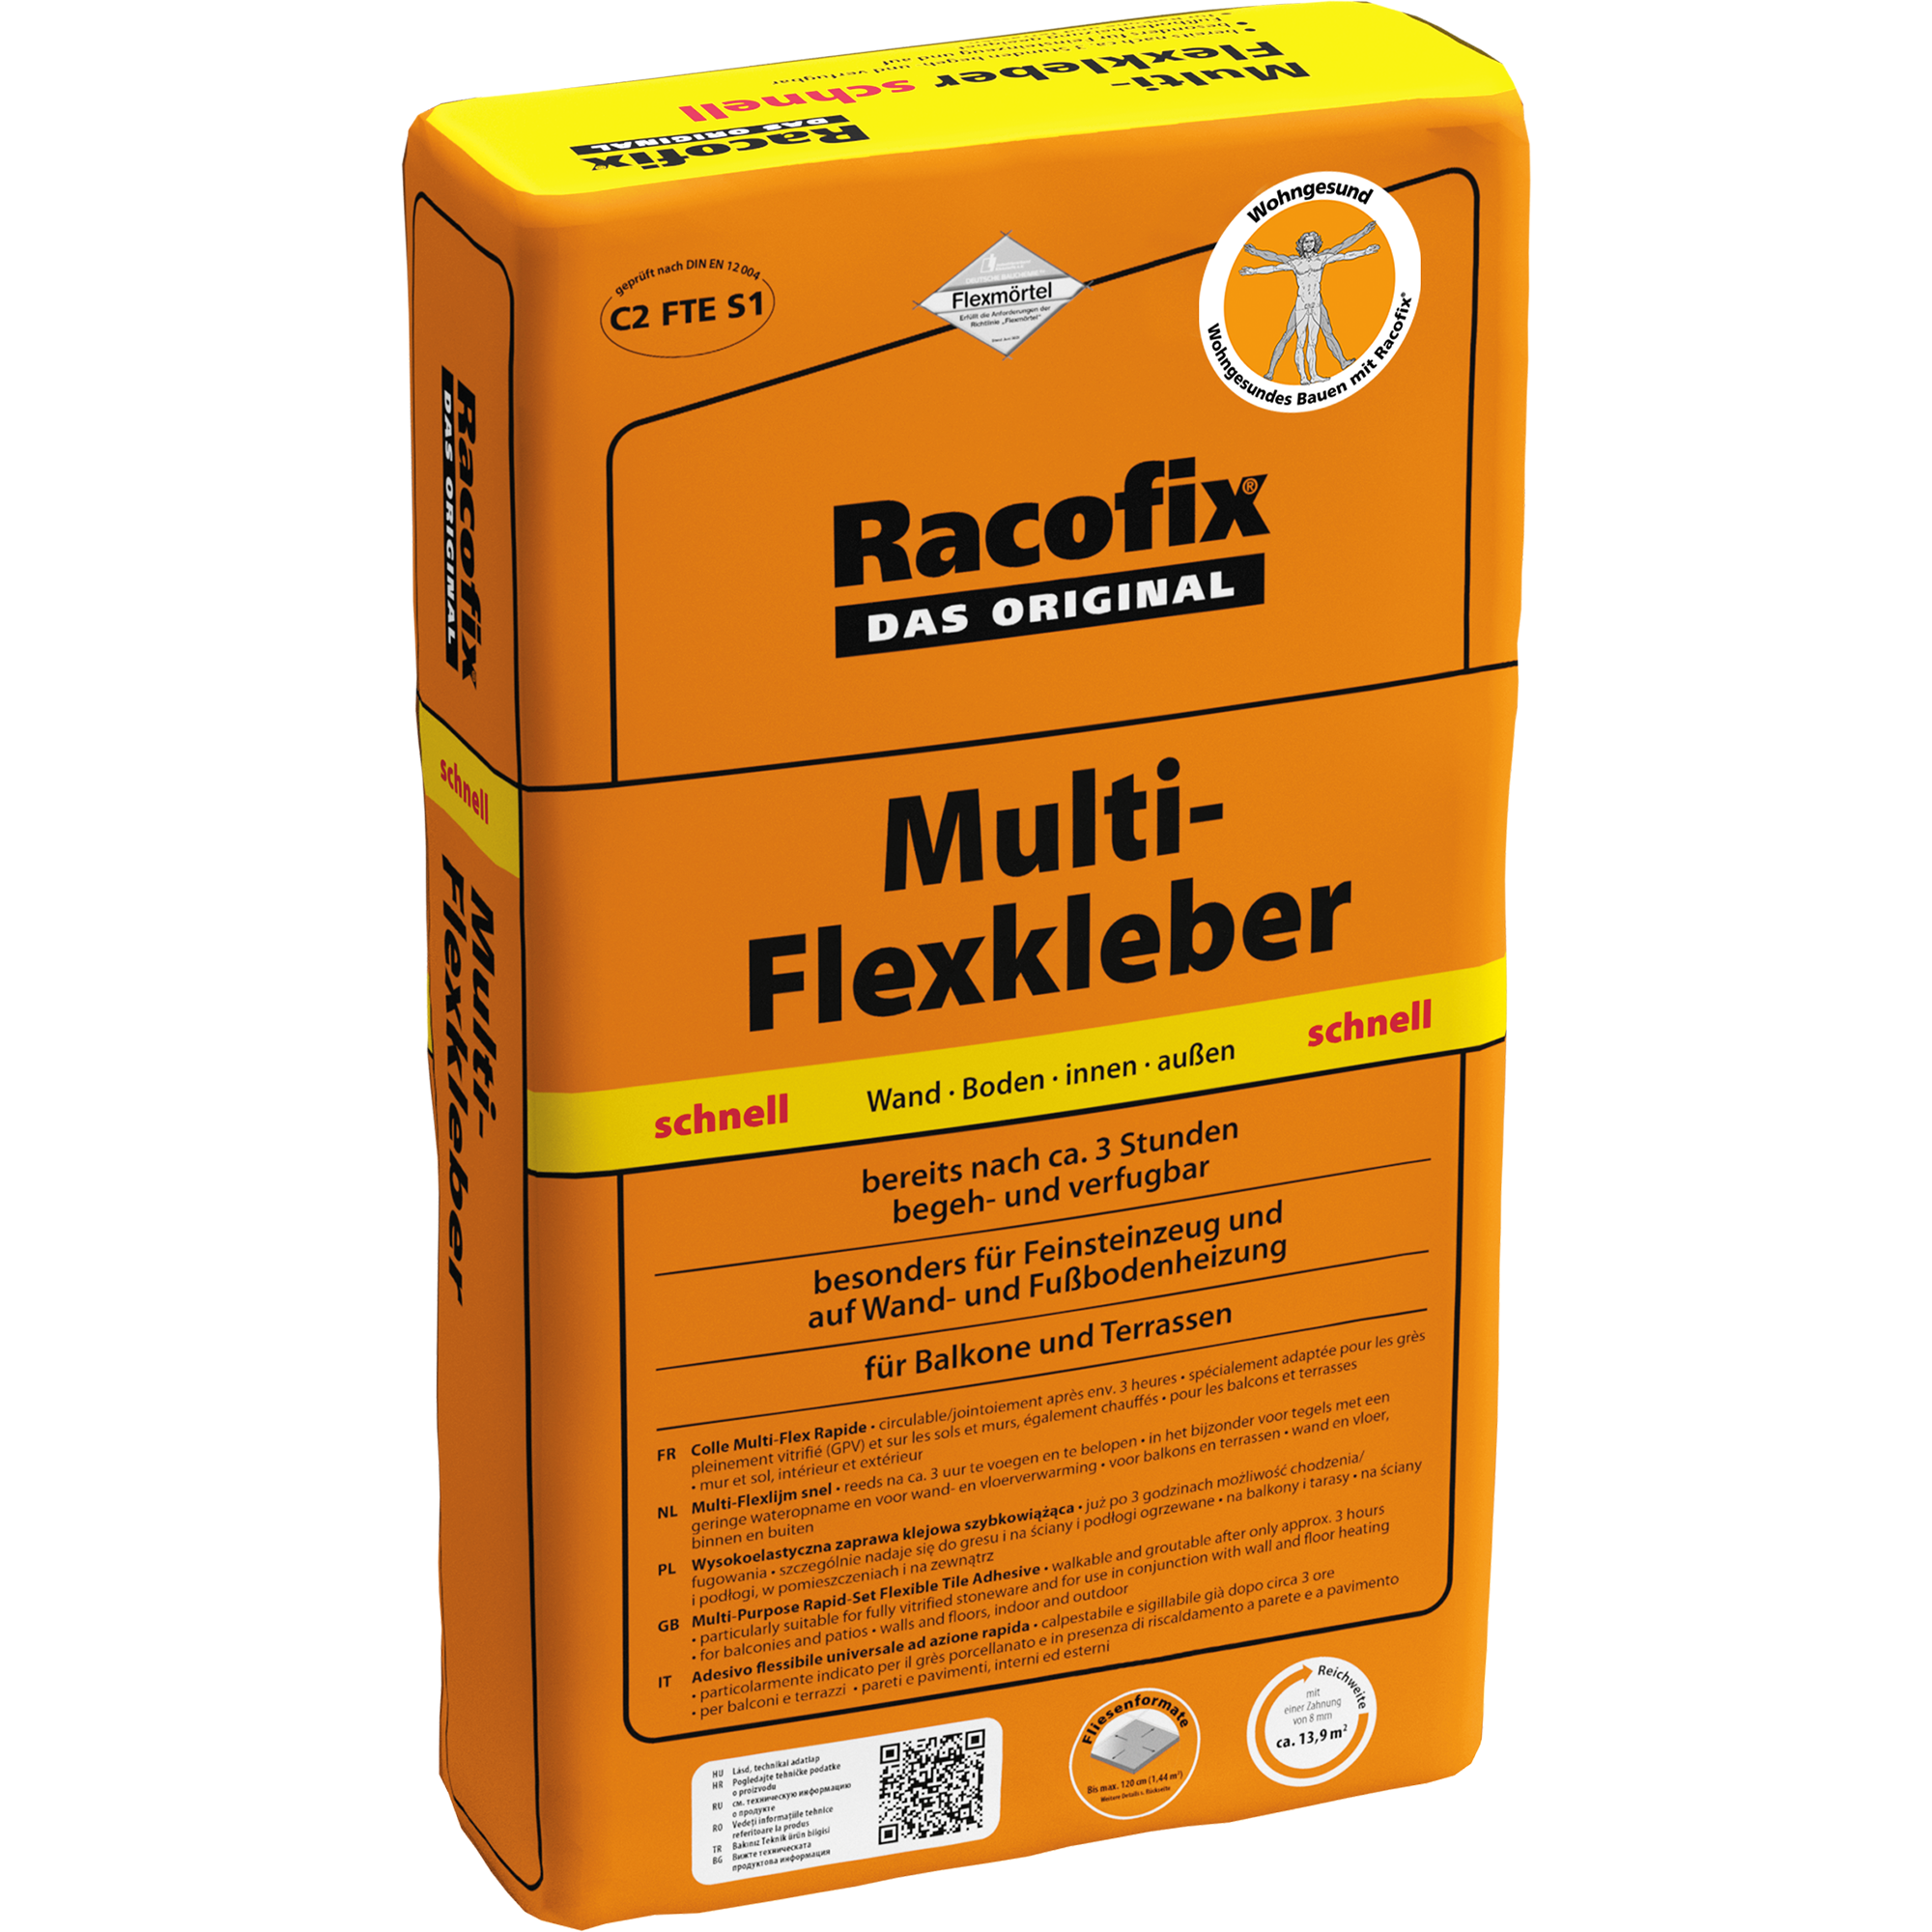 Multi-Flexkleber 'Racofix' 25 kg + product picture